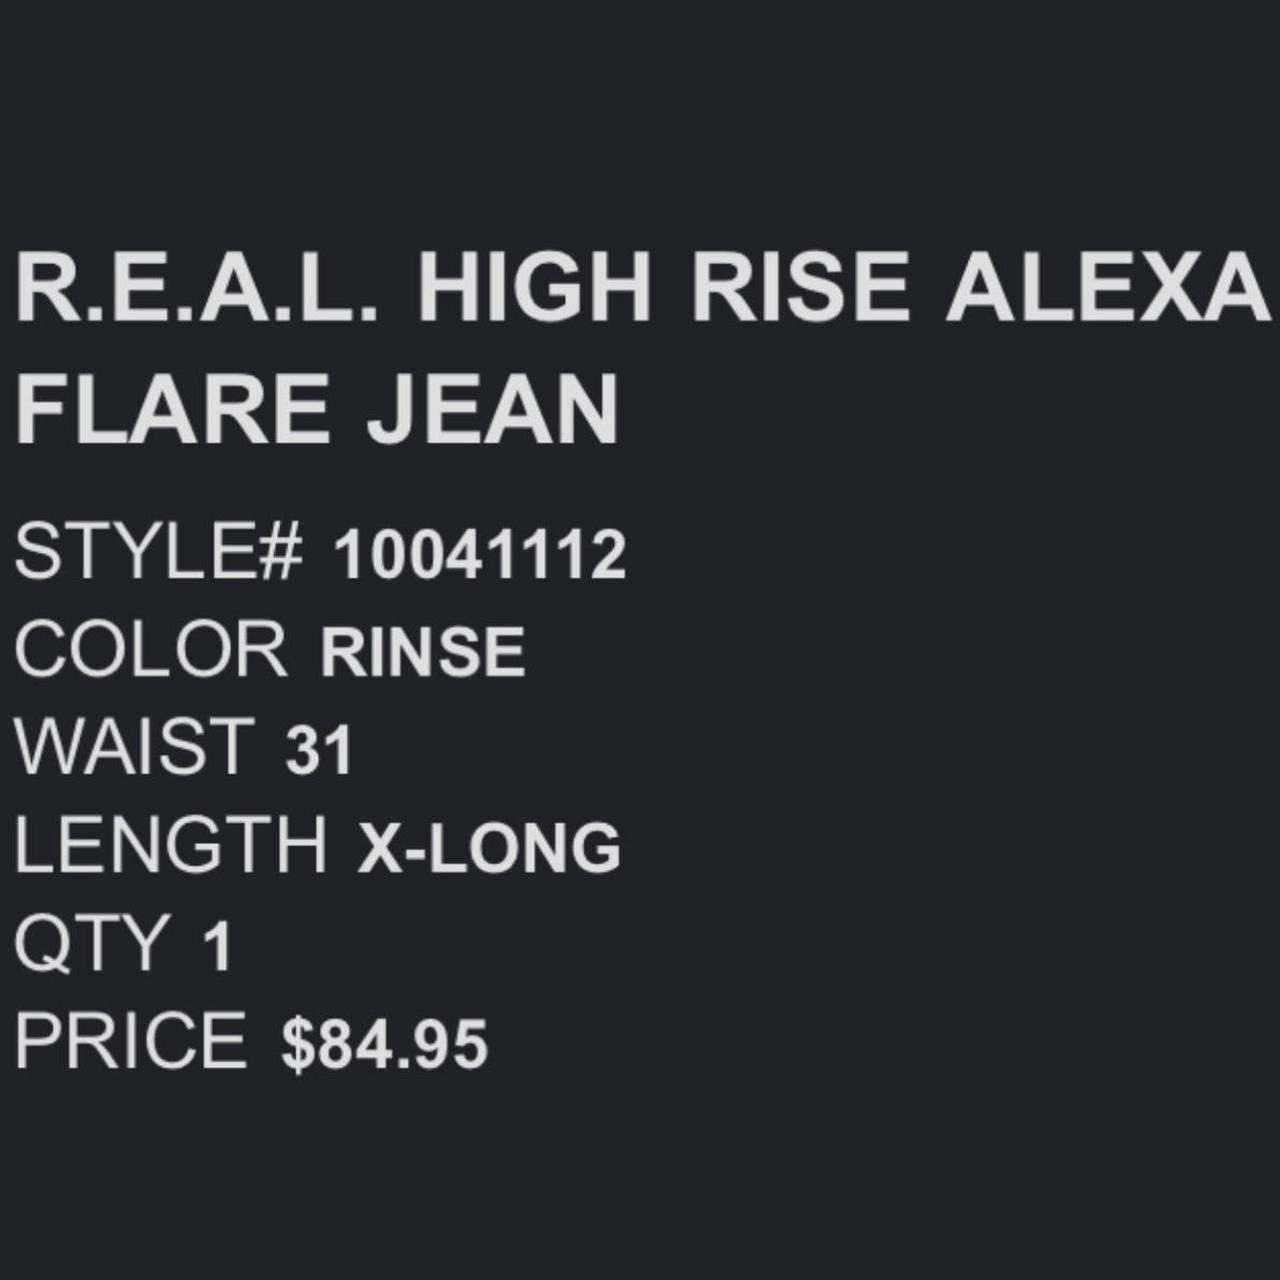 R.E.A.L. High Rise Alexa Flare Jean